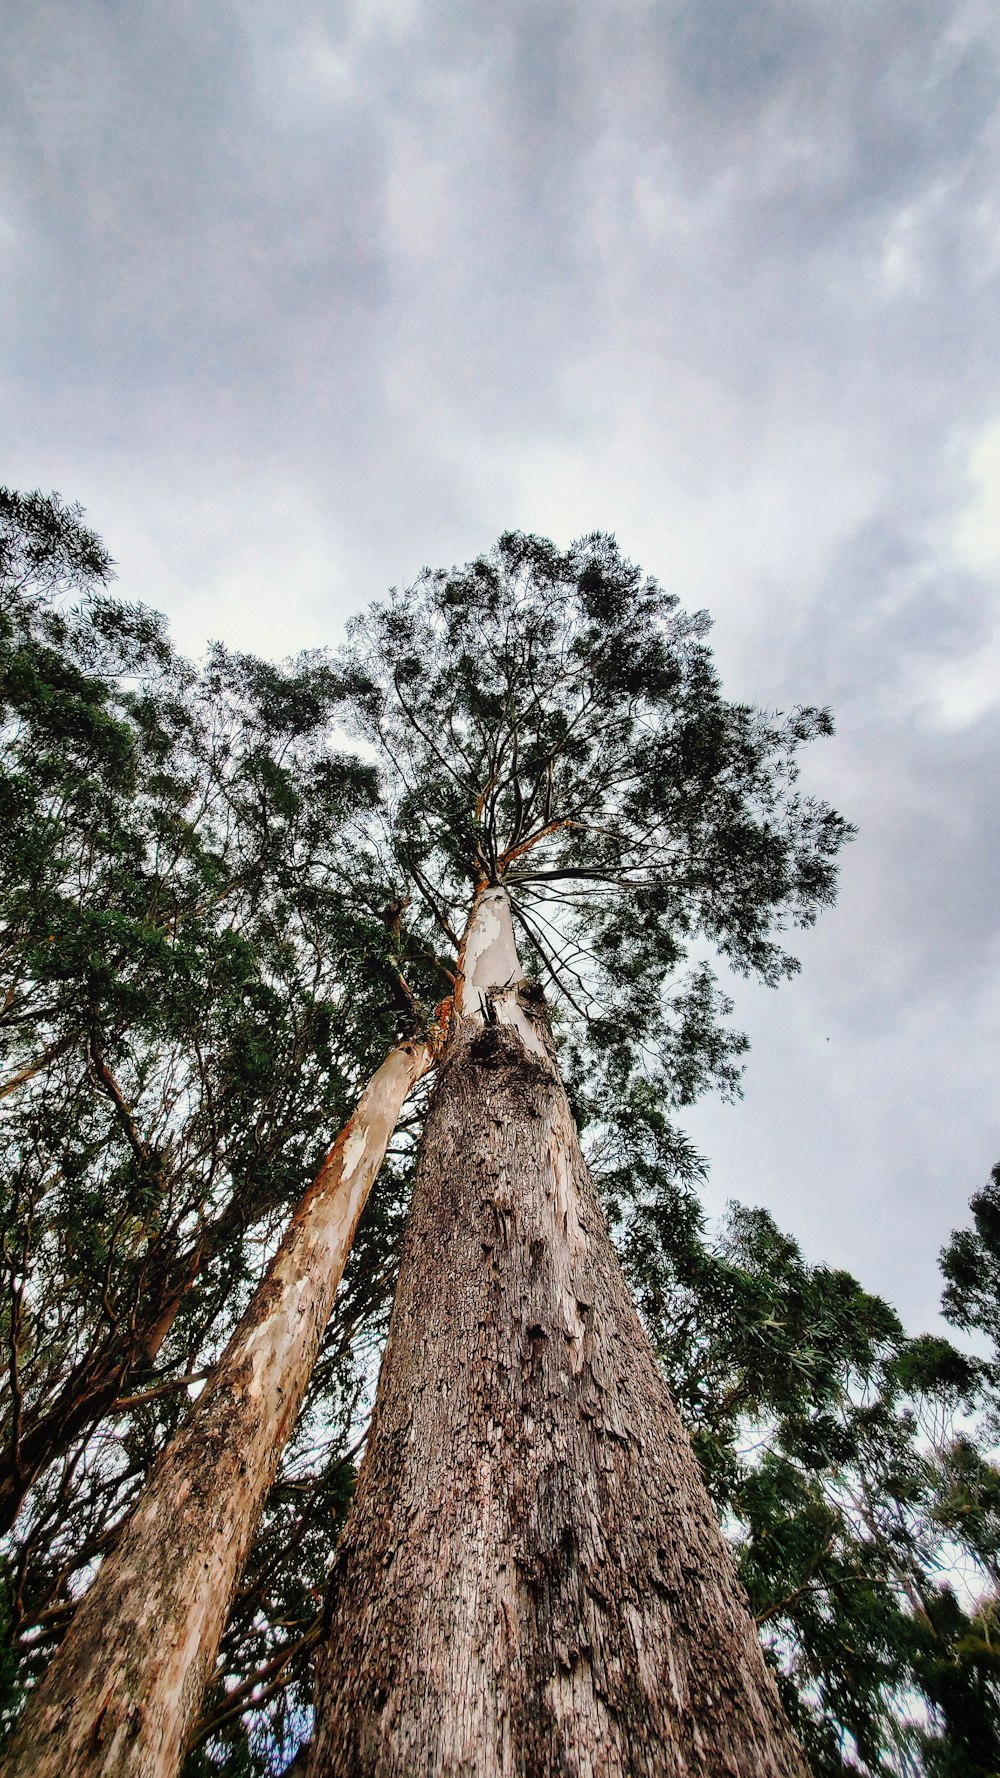 키 큰 나무의 로우 앵글 사진